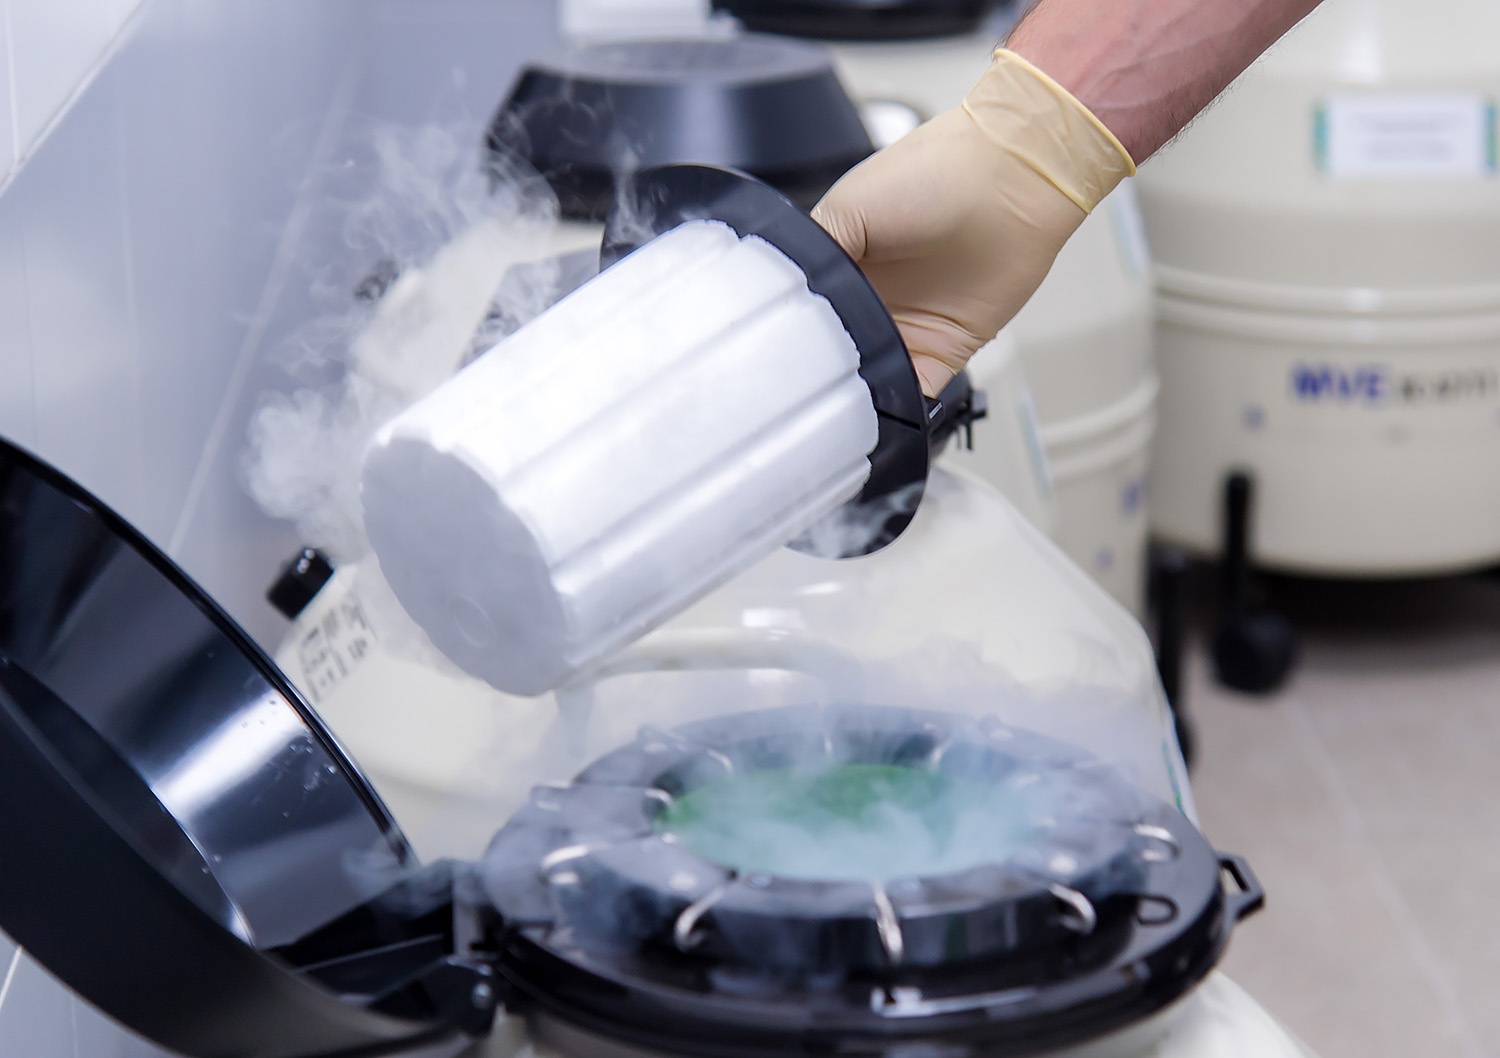 Криоконсервация — заморозка яйцеклеток для использования в будущем — проходит с использованием жидкого азота